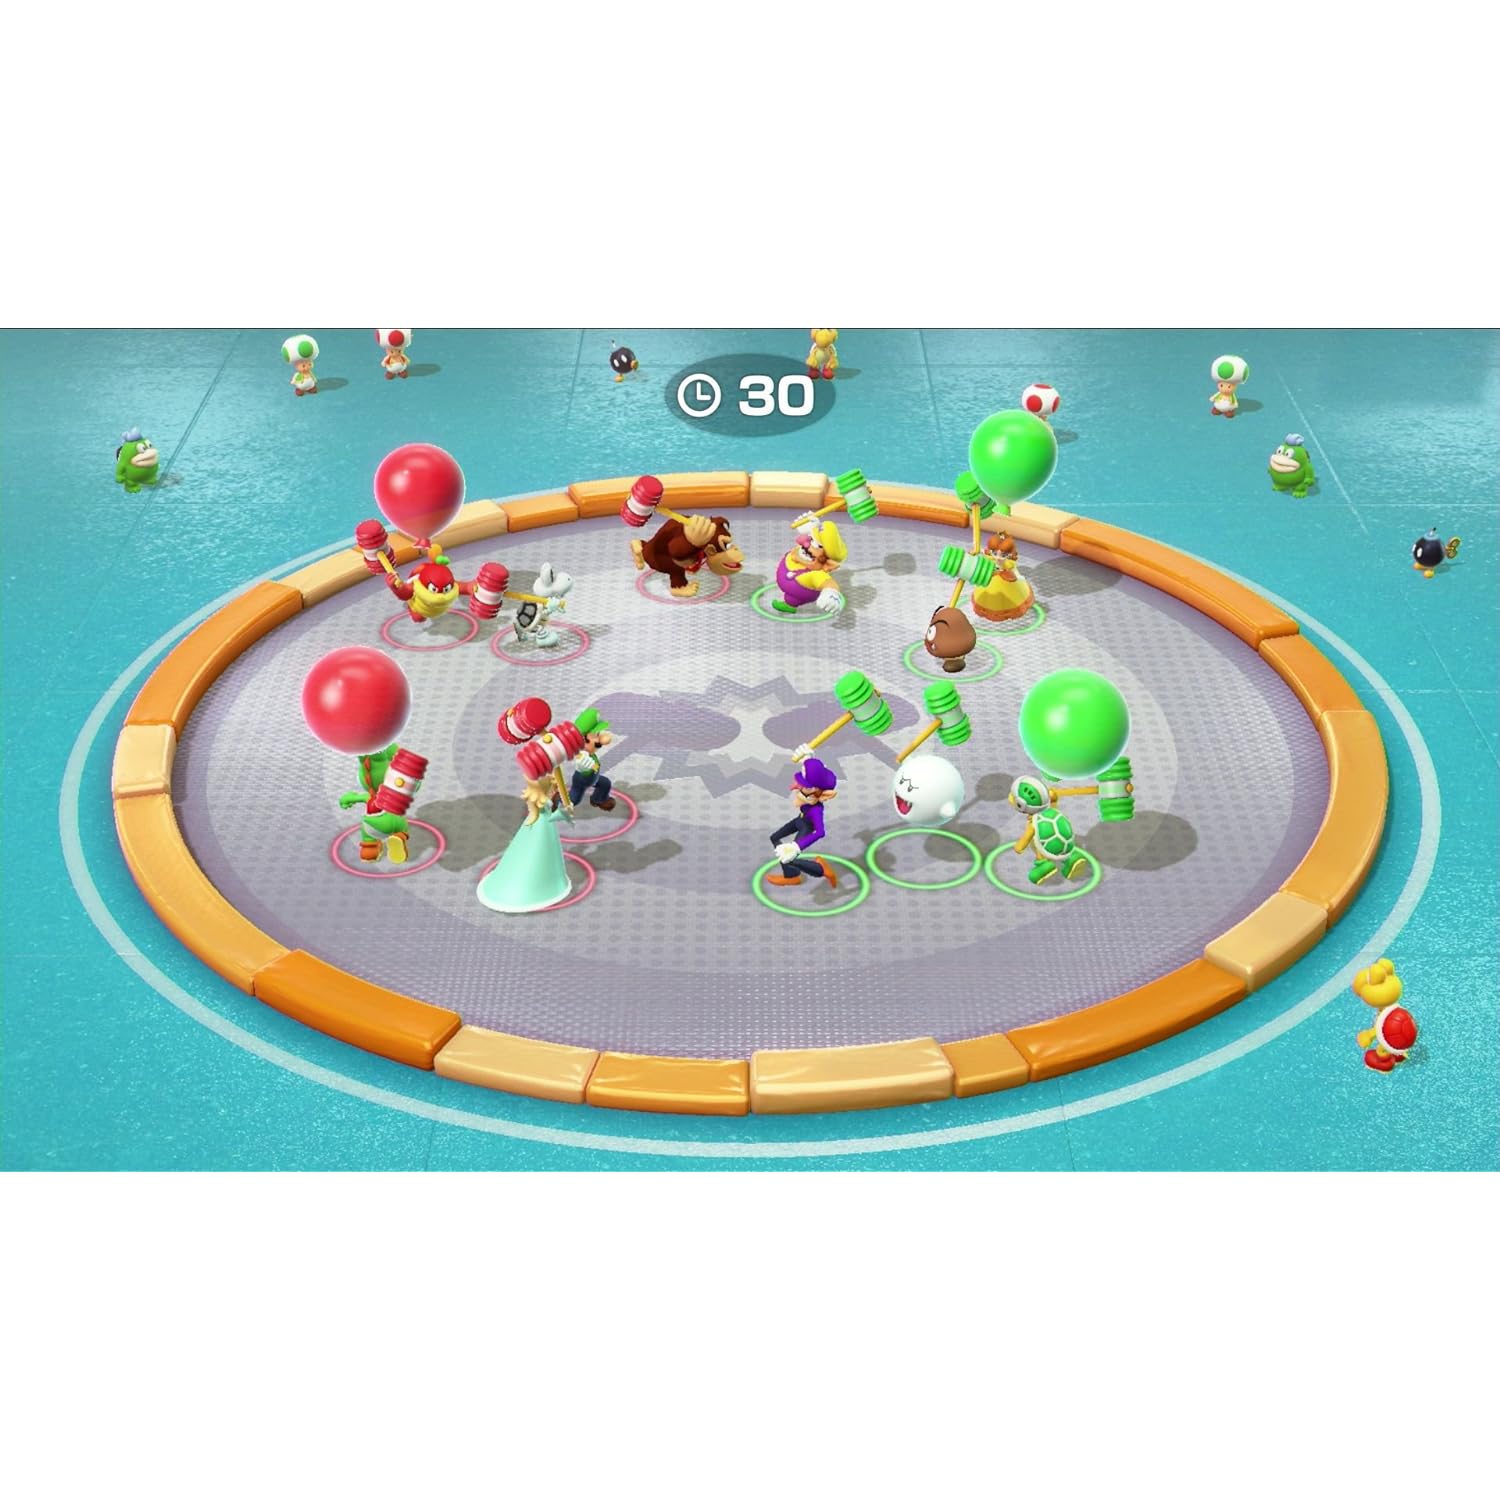 Nintendo Super Mario Party (nintendo Switch), 1 Pound